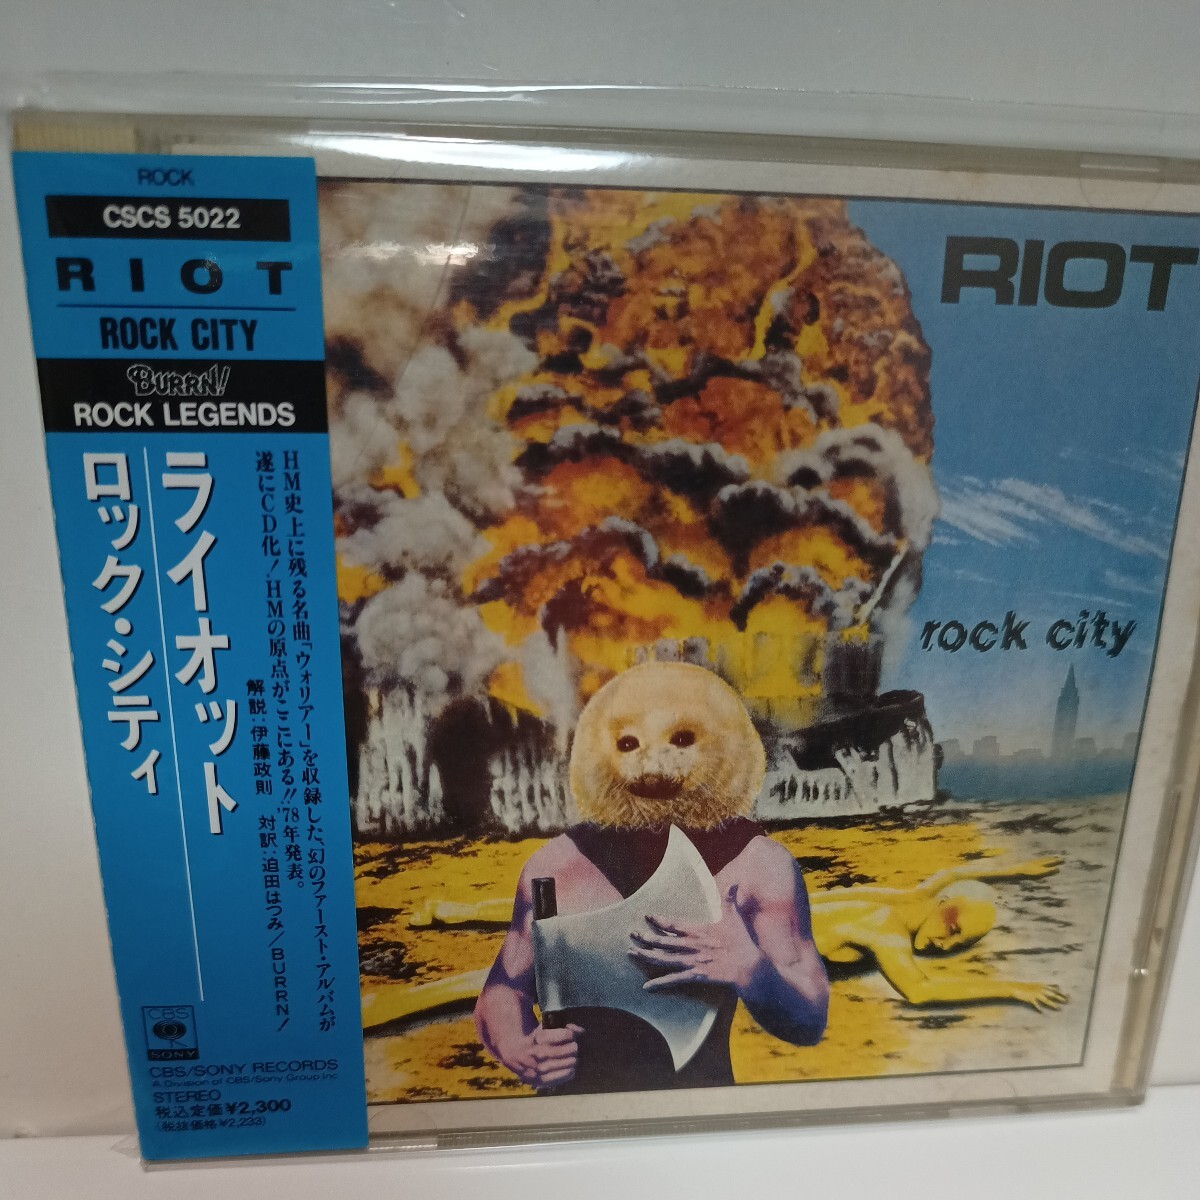 RIOT[ROCK CITY] записано в Японии с поясом оби 